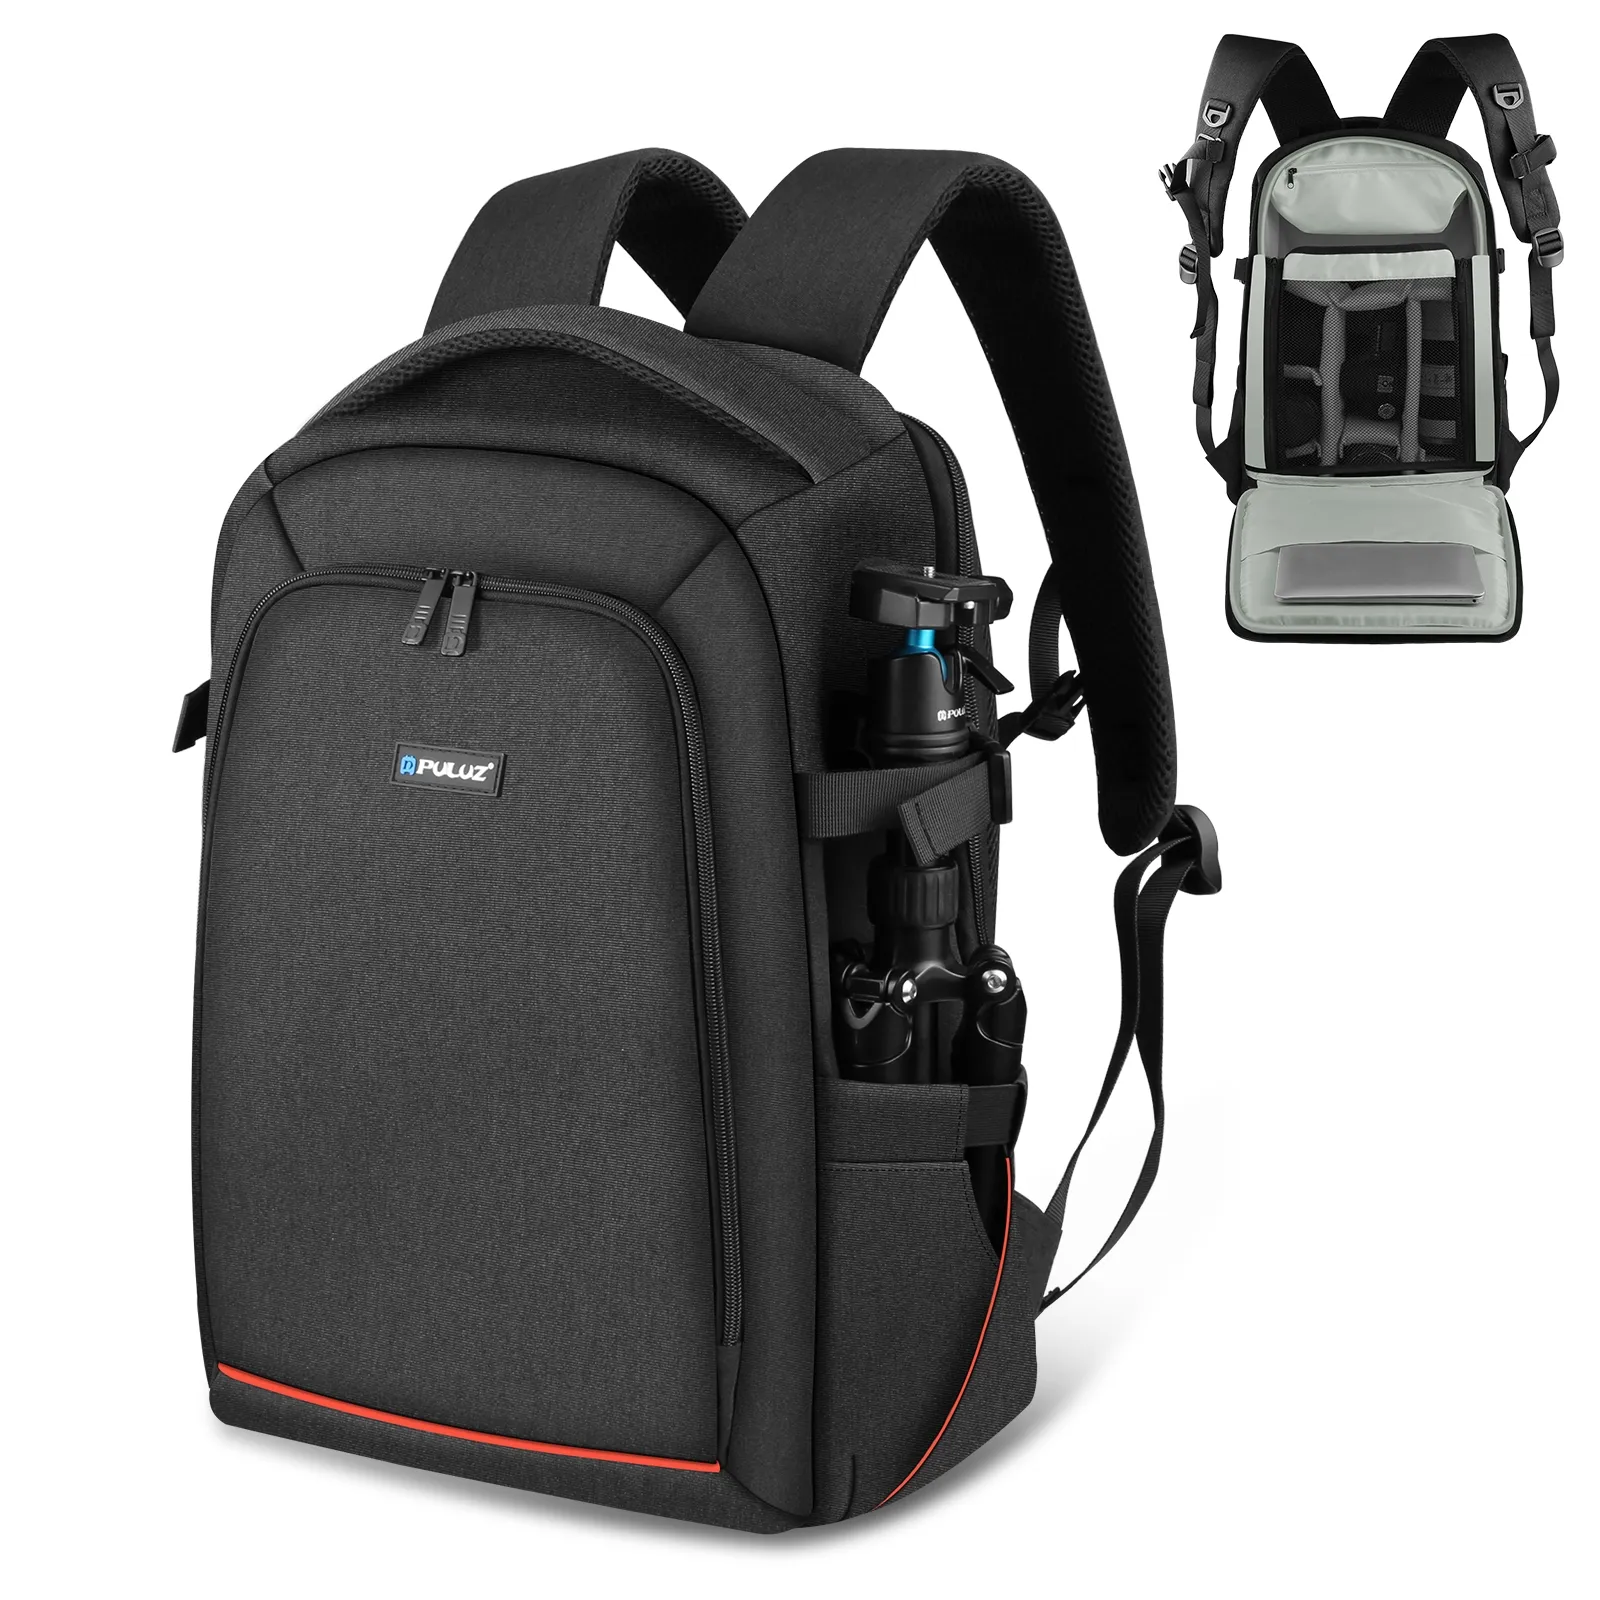 Vendita calda PULUZ Outdoor zaino impermeabile borsa per fotocamera stabilizzatore PTZ portatile con copertura antipioggia per borsa per fotocamera digitale